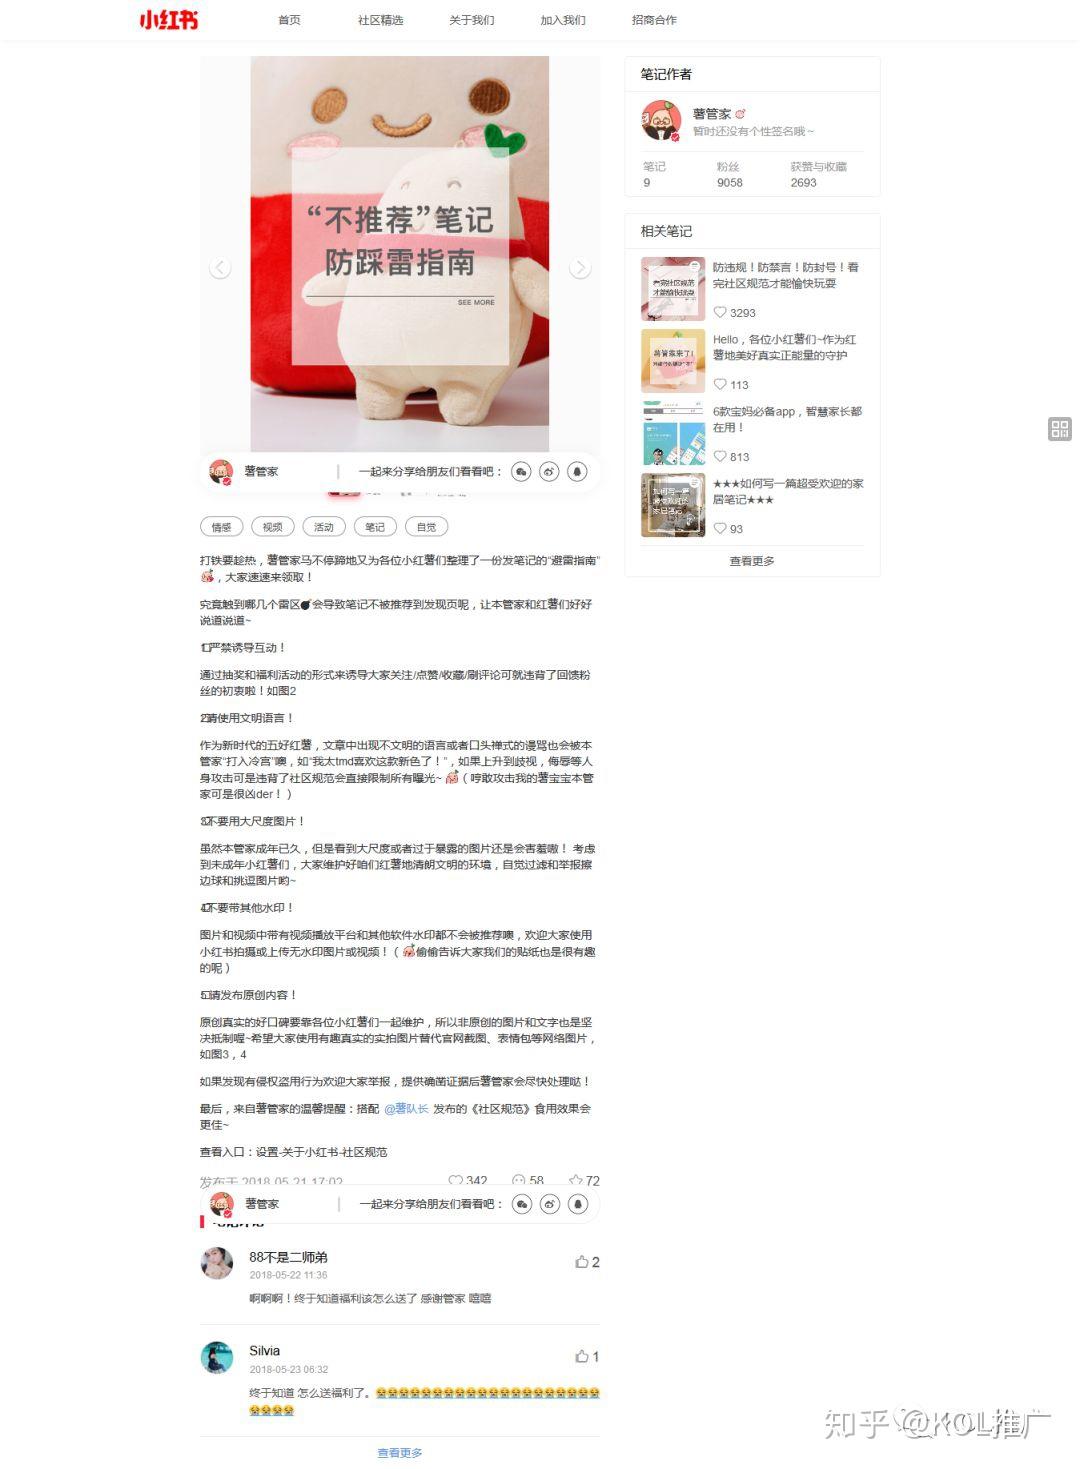 互粉平台涨粉王wang_一块钱涨1000粉_不互粉如何让微博涨粉